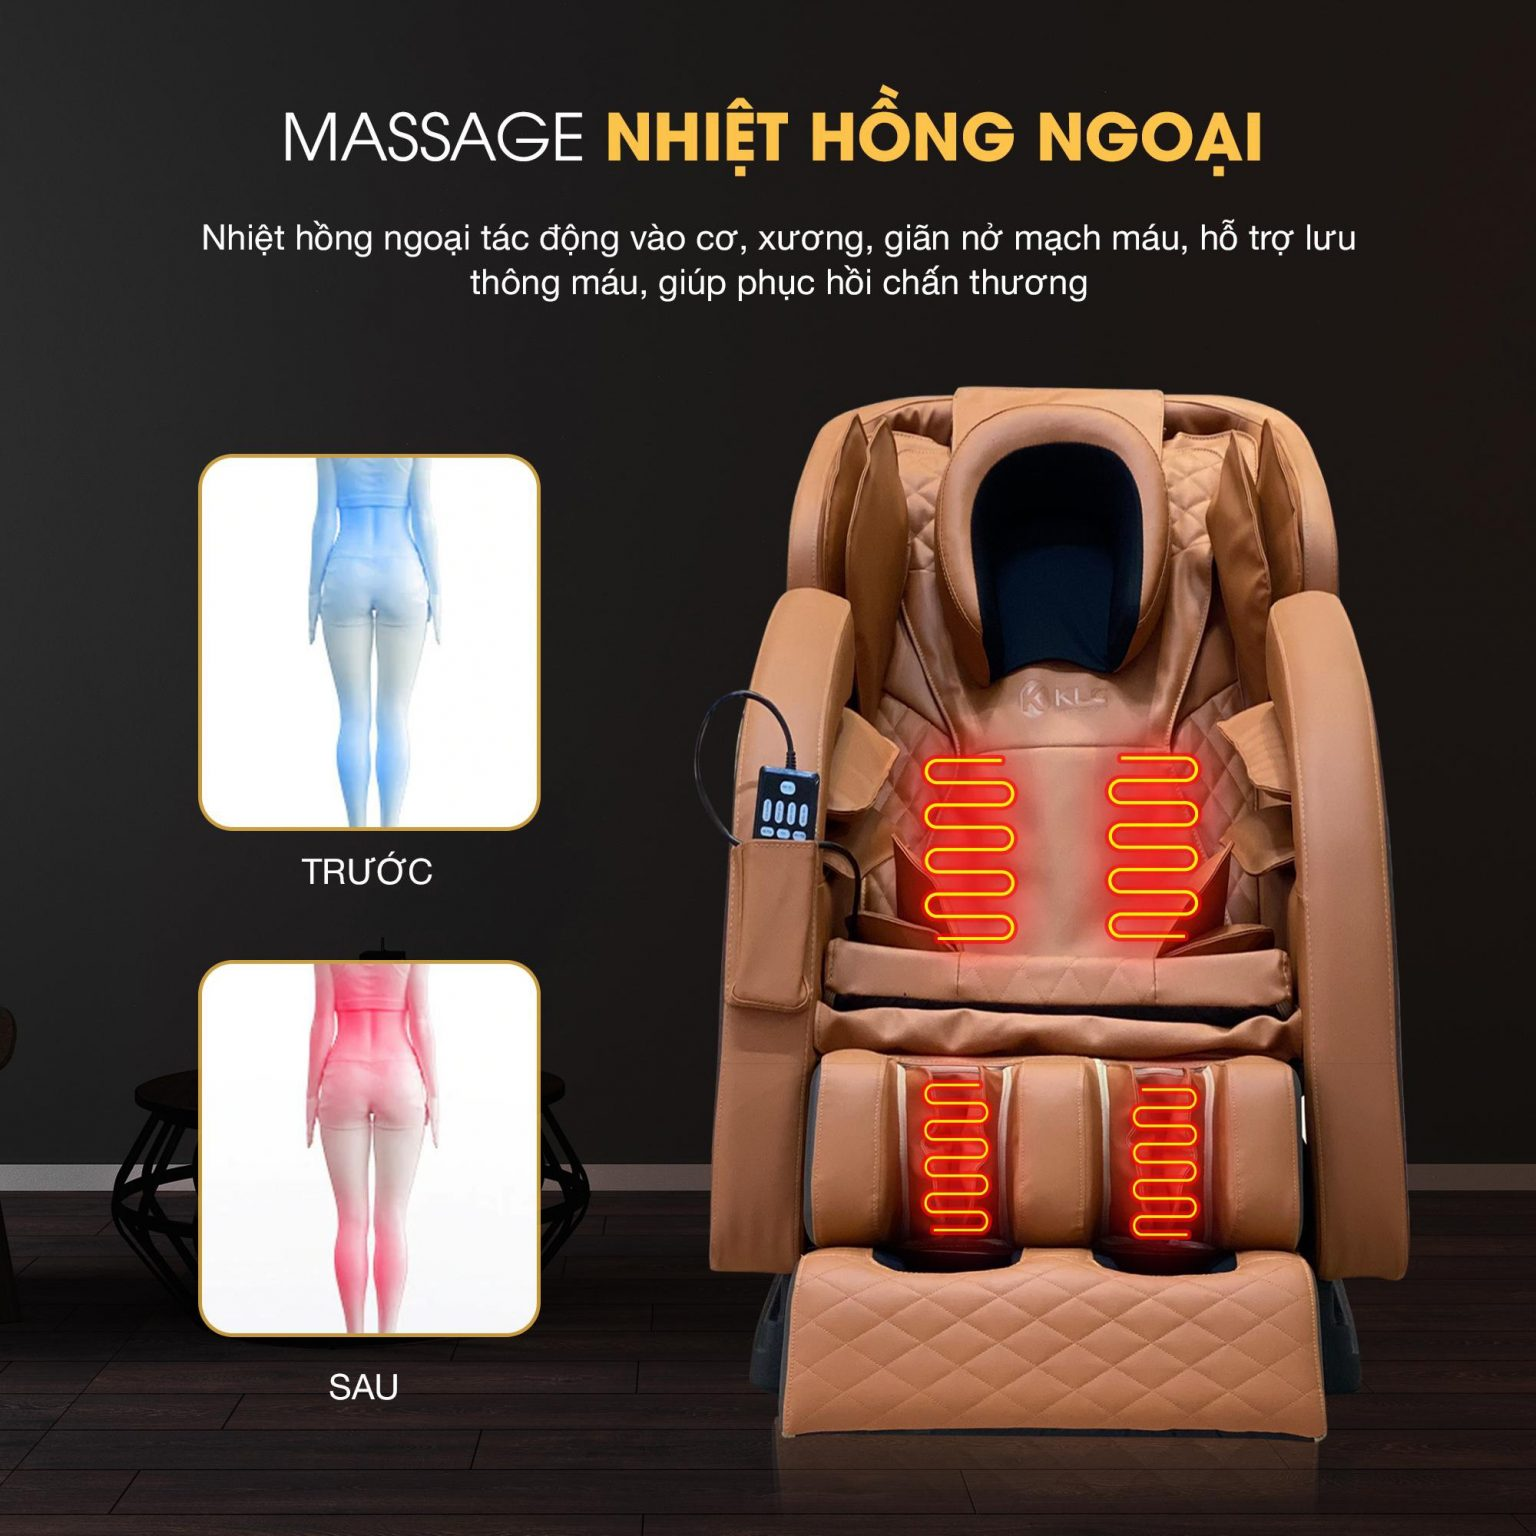 Ghế massage giá rẻ được tích hợp đầy đủ các tính năng hiện đại cơ bản 